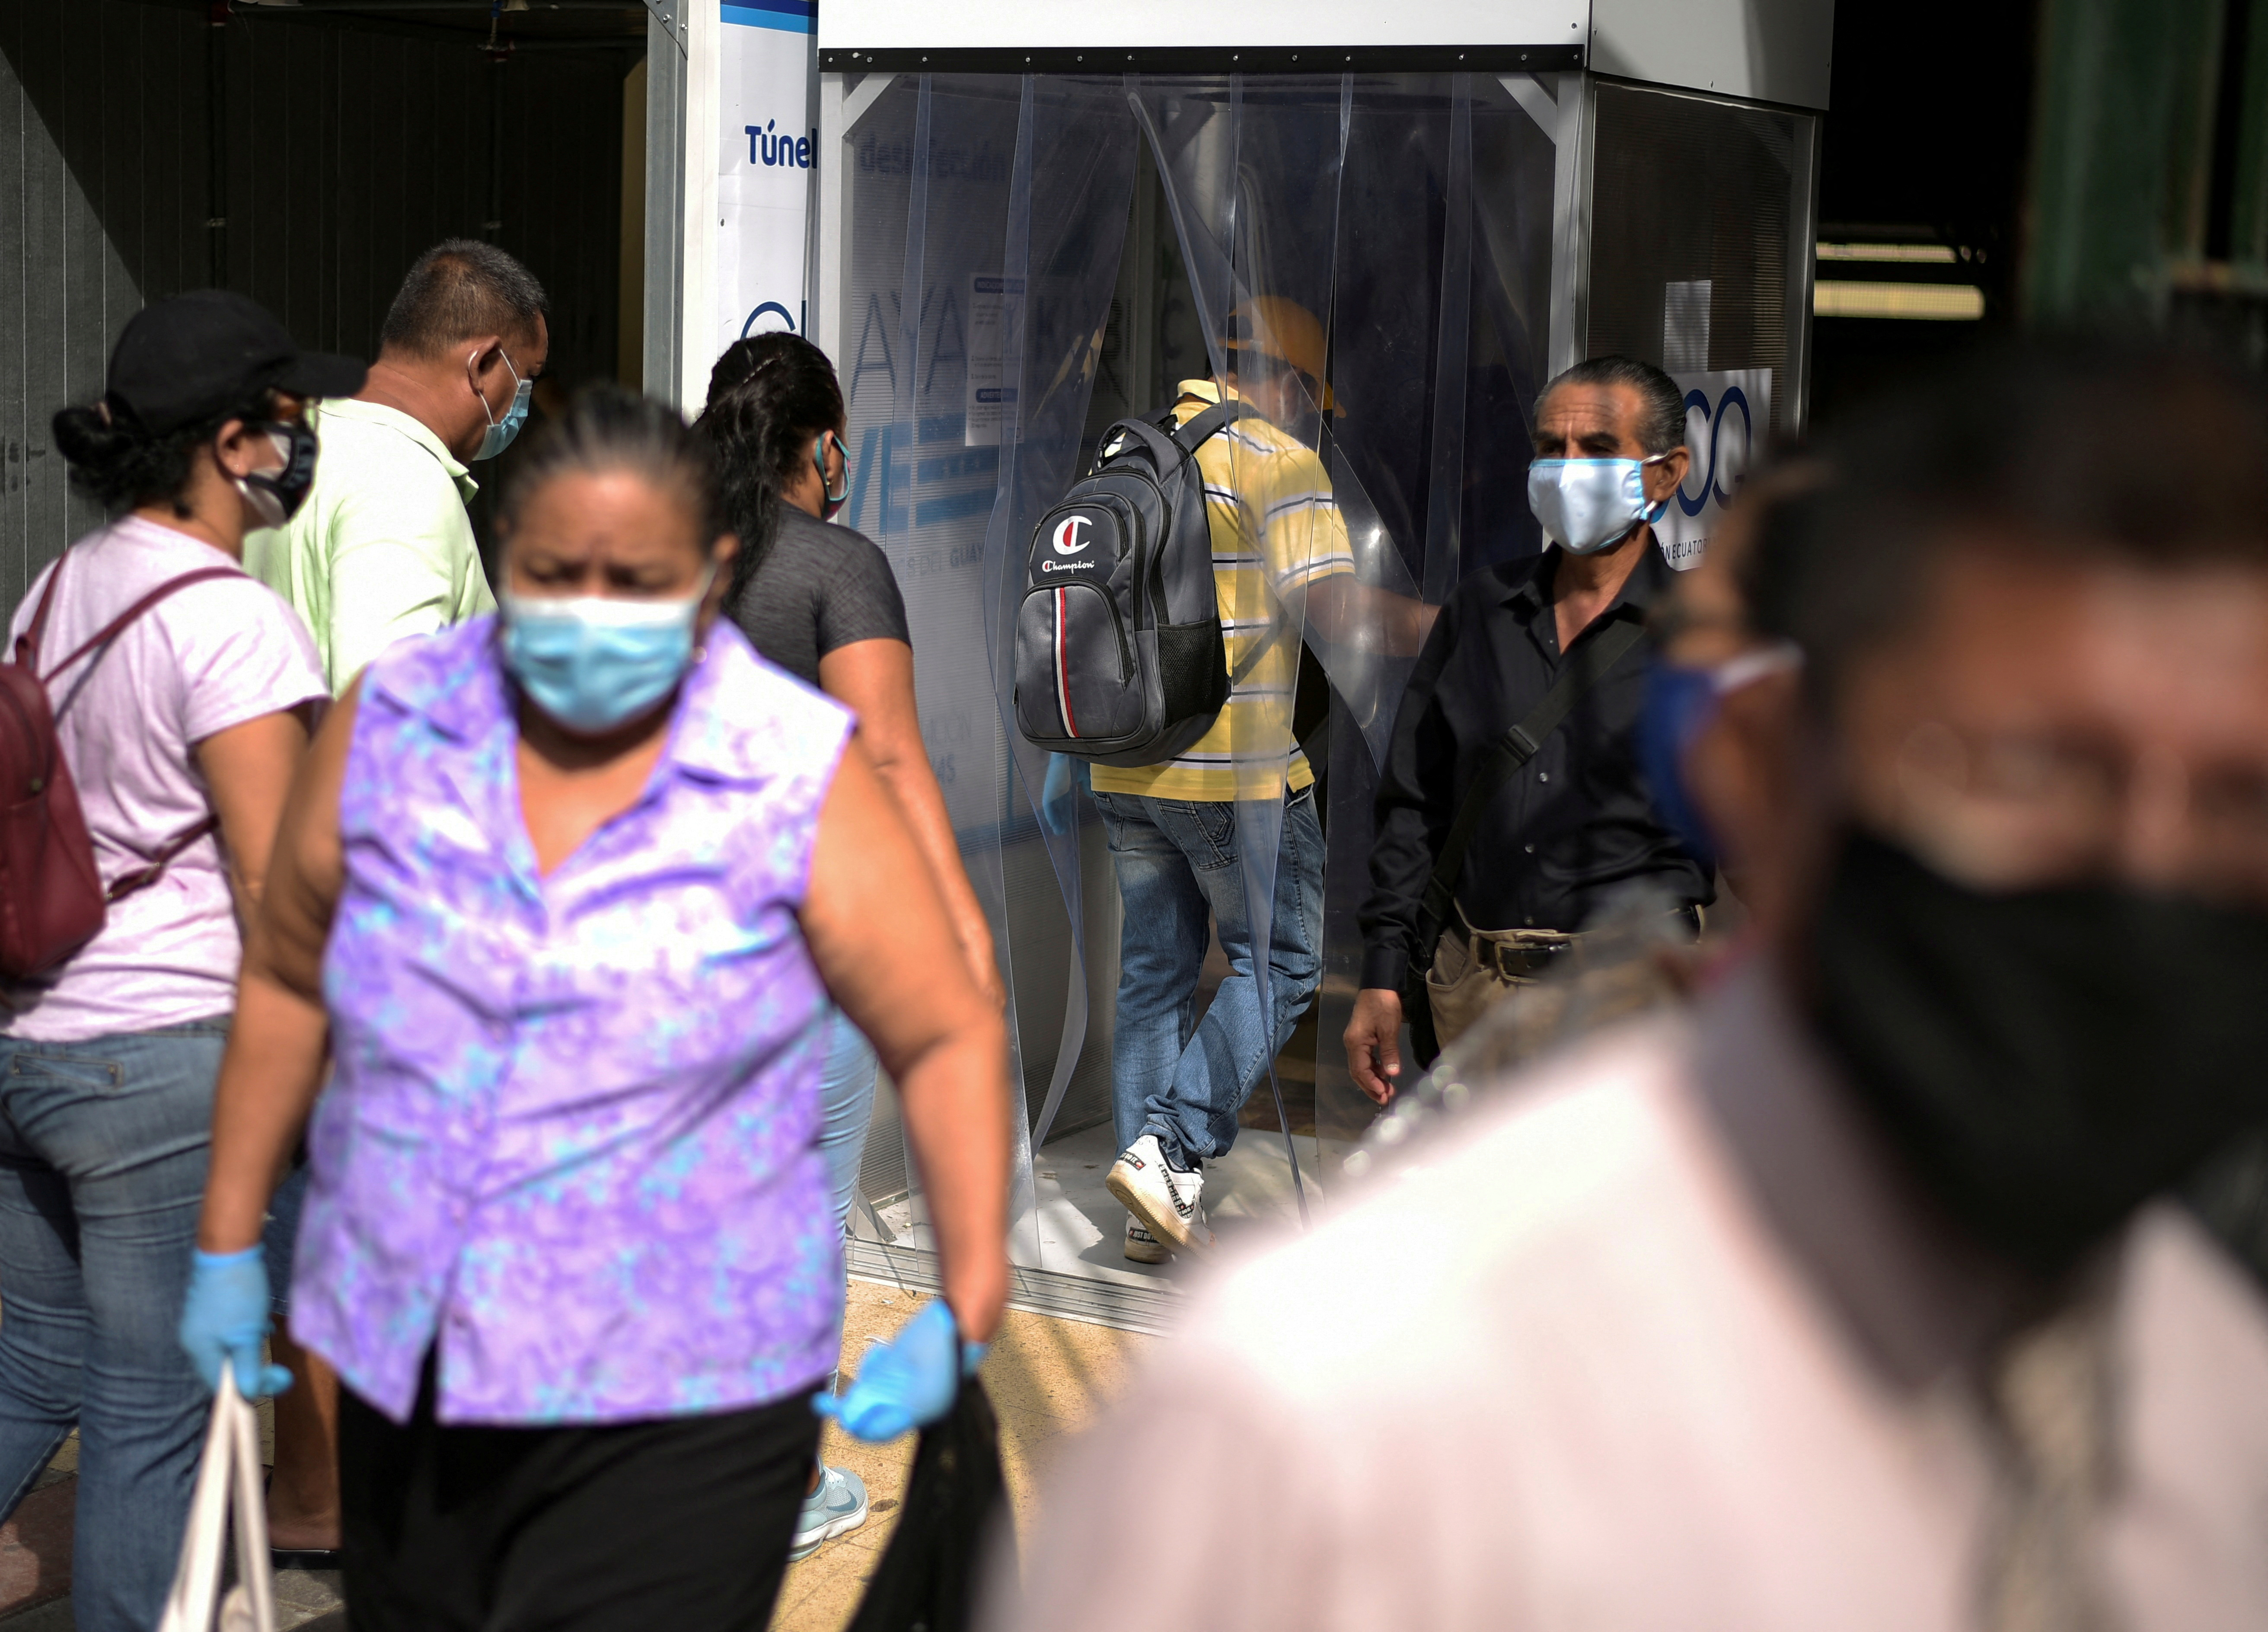 Las autoridades recomiendan en aislamiento voluntario y uso de mascarilla en todo lugar para las personas que resulten positivas para coronavirus. (REUTERS/Vicente Gaibor del Pino)